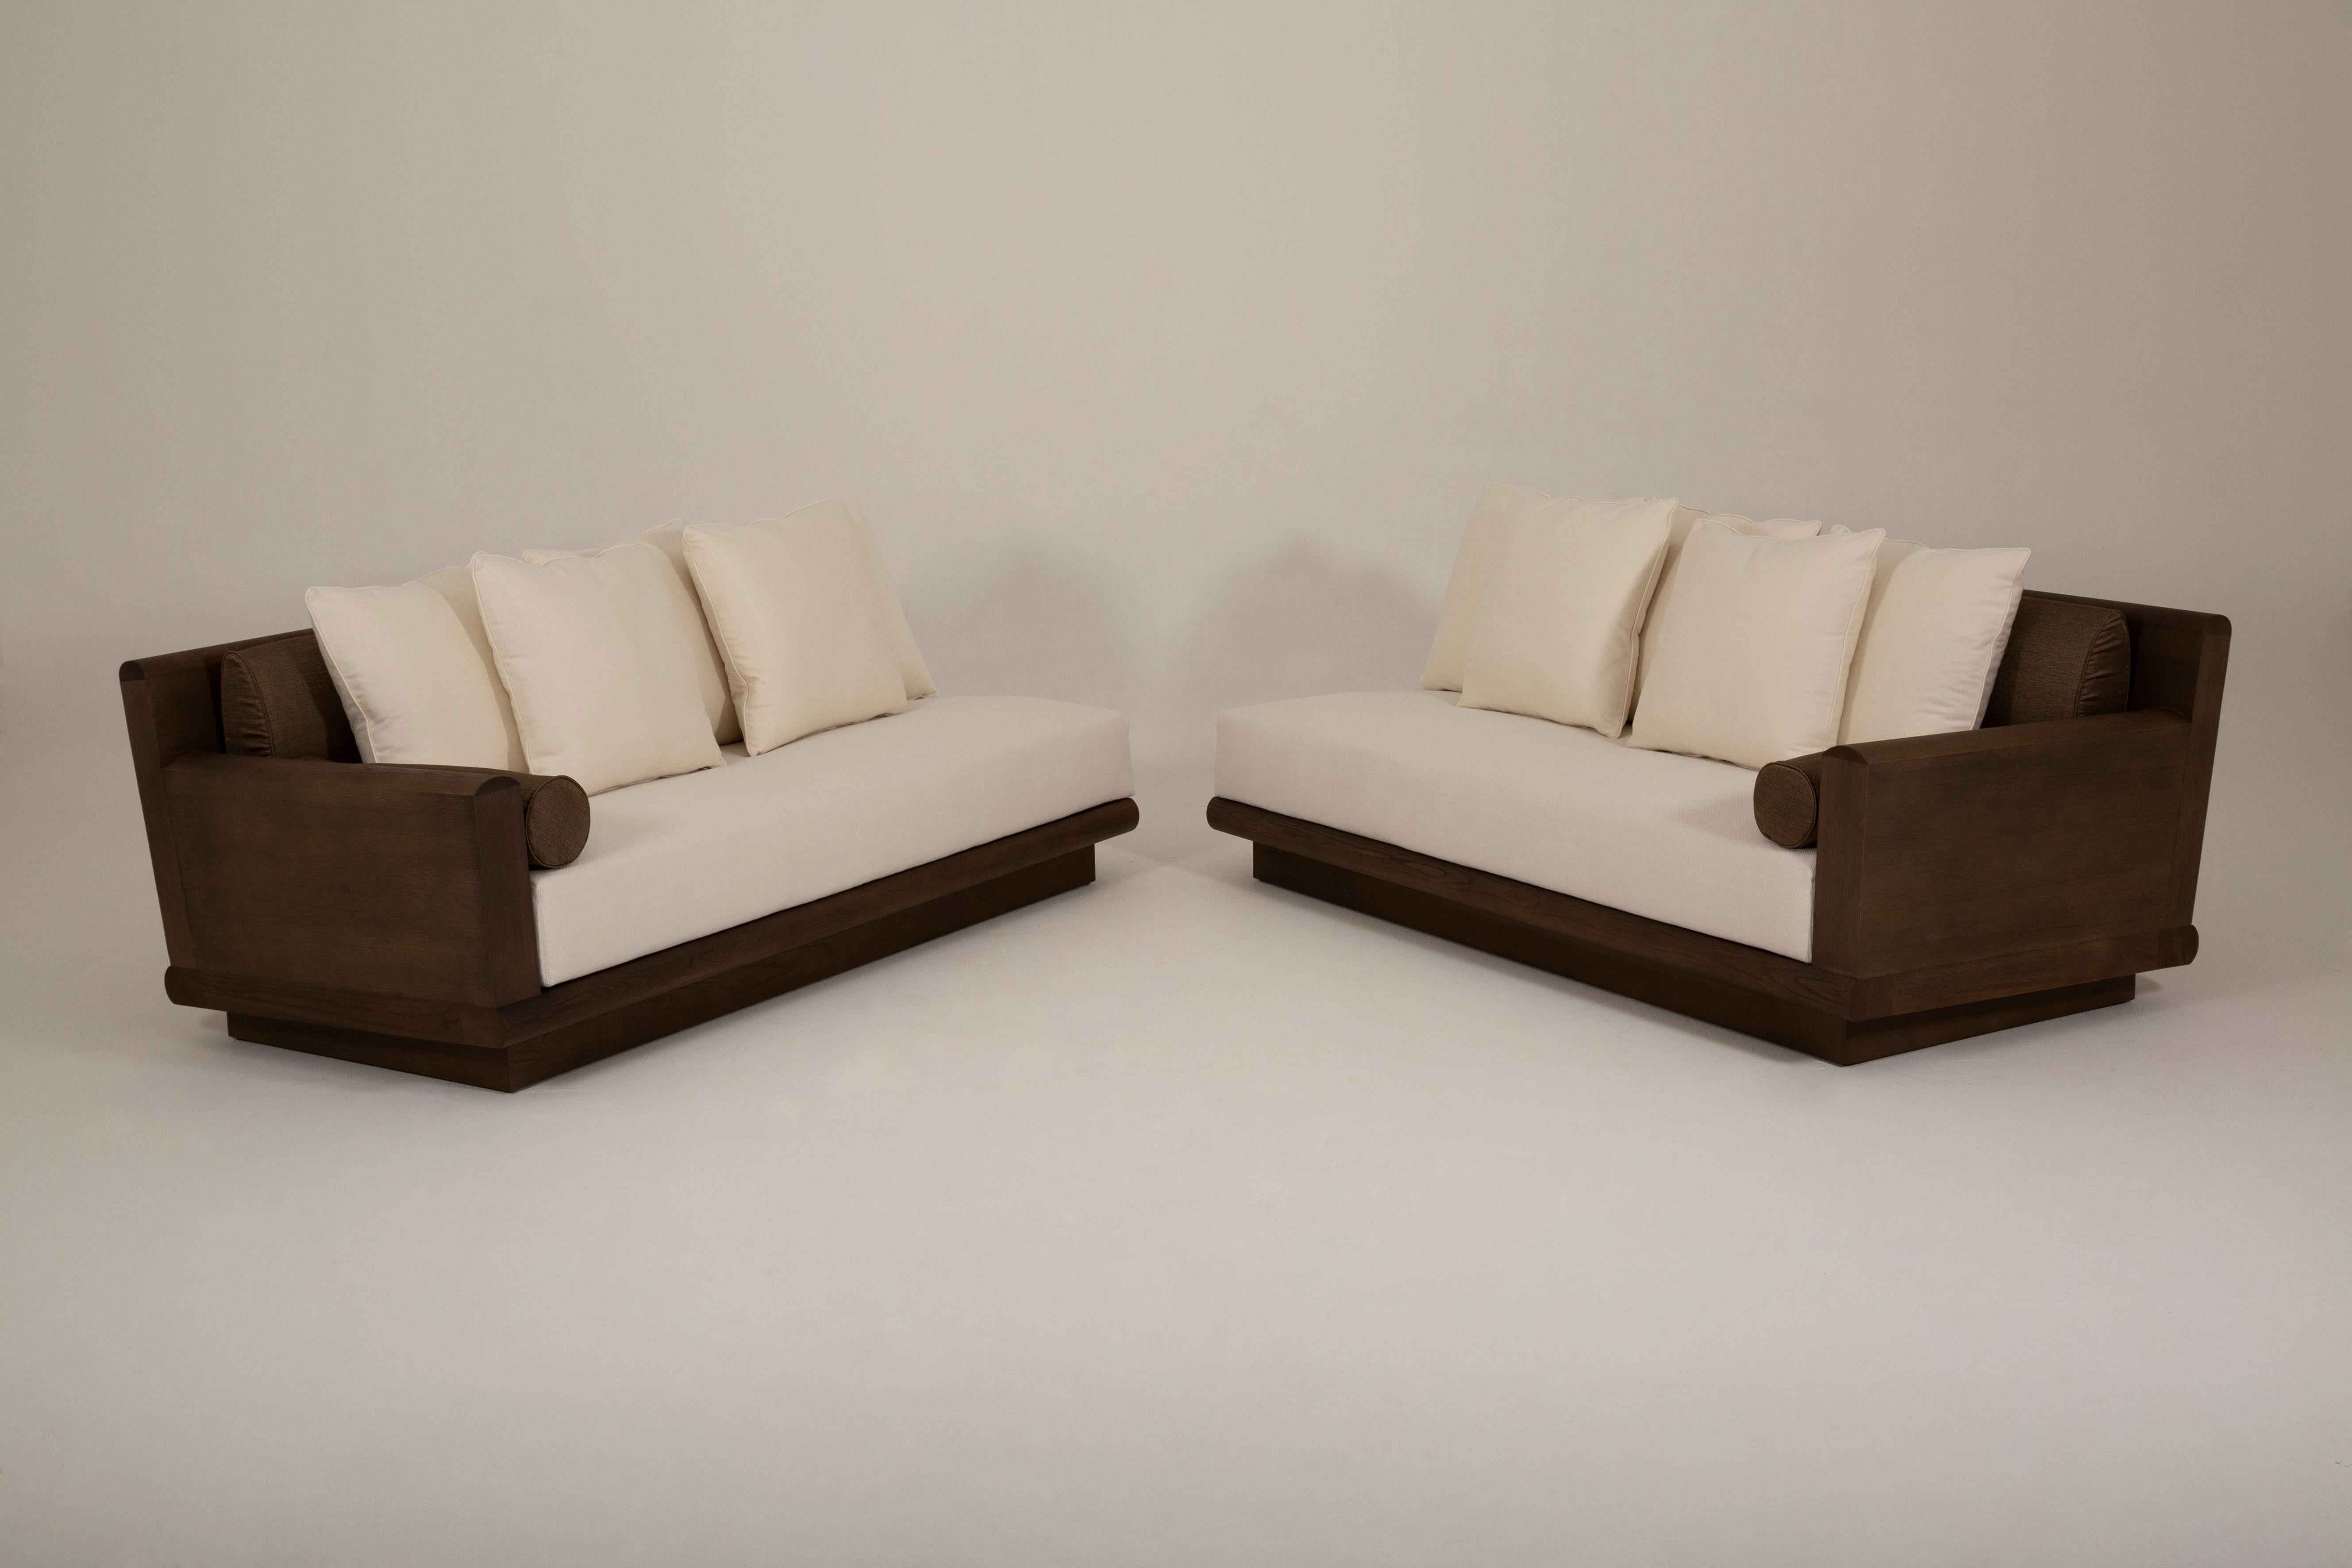 Le canapé Asafis est fabriqué en 2023 par l'Atelier Linné. La structure du canapé est en chêne brossé, le coussin d'assise est en mousse avec des bords arrondis à l'avant. Le dossier se compose de 2 coussins de dossier ovales en mousse, de cinq